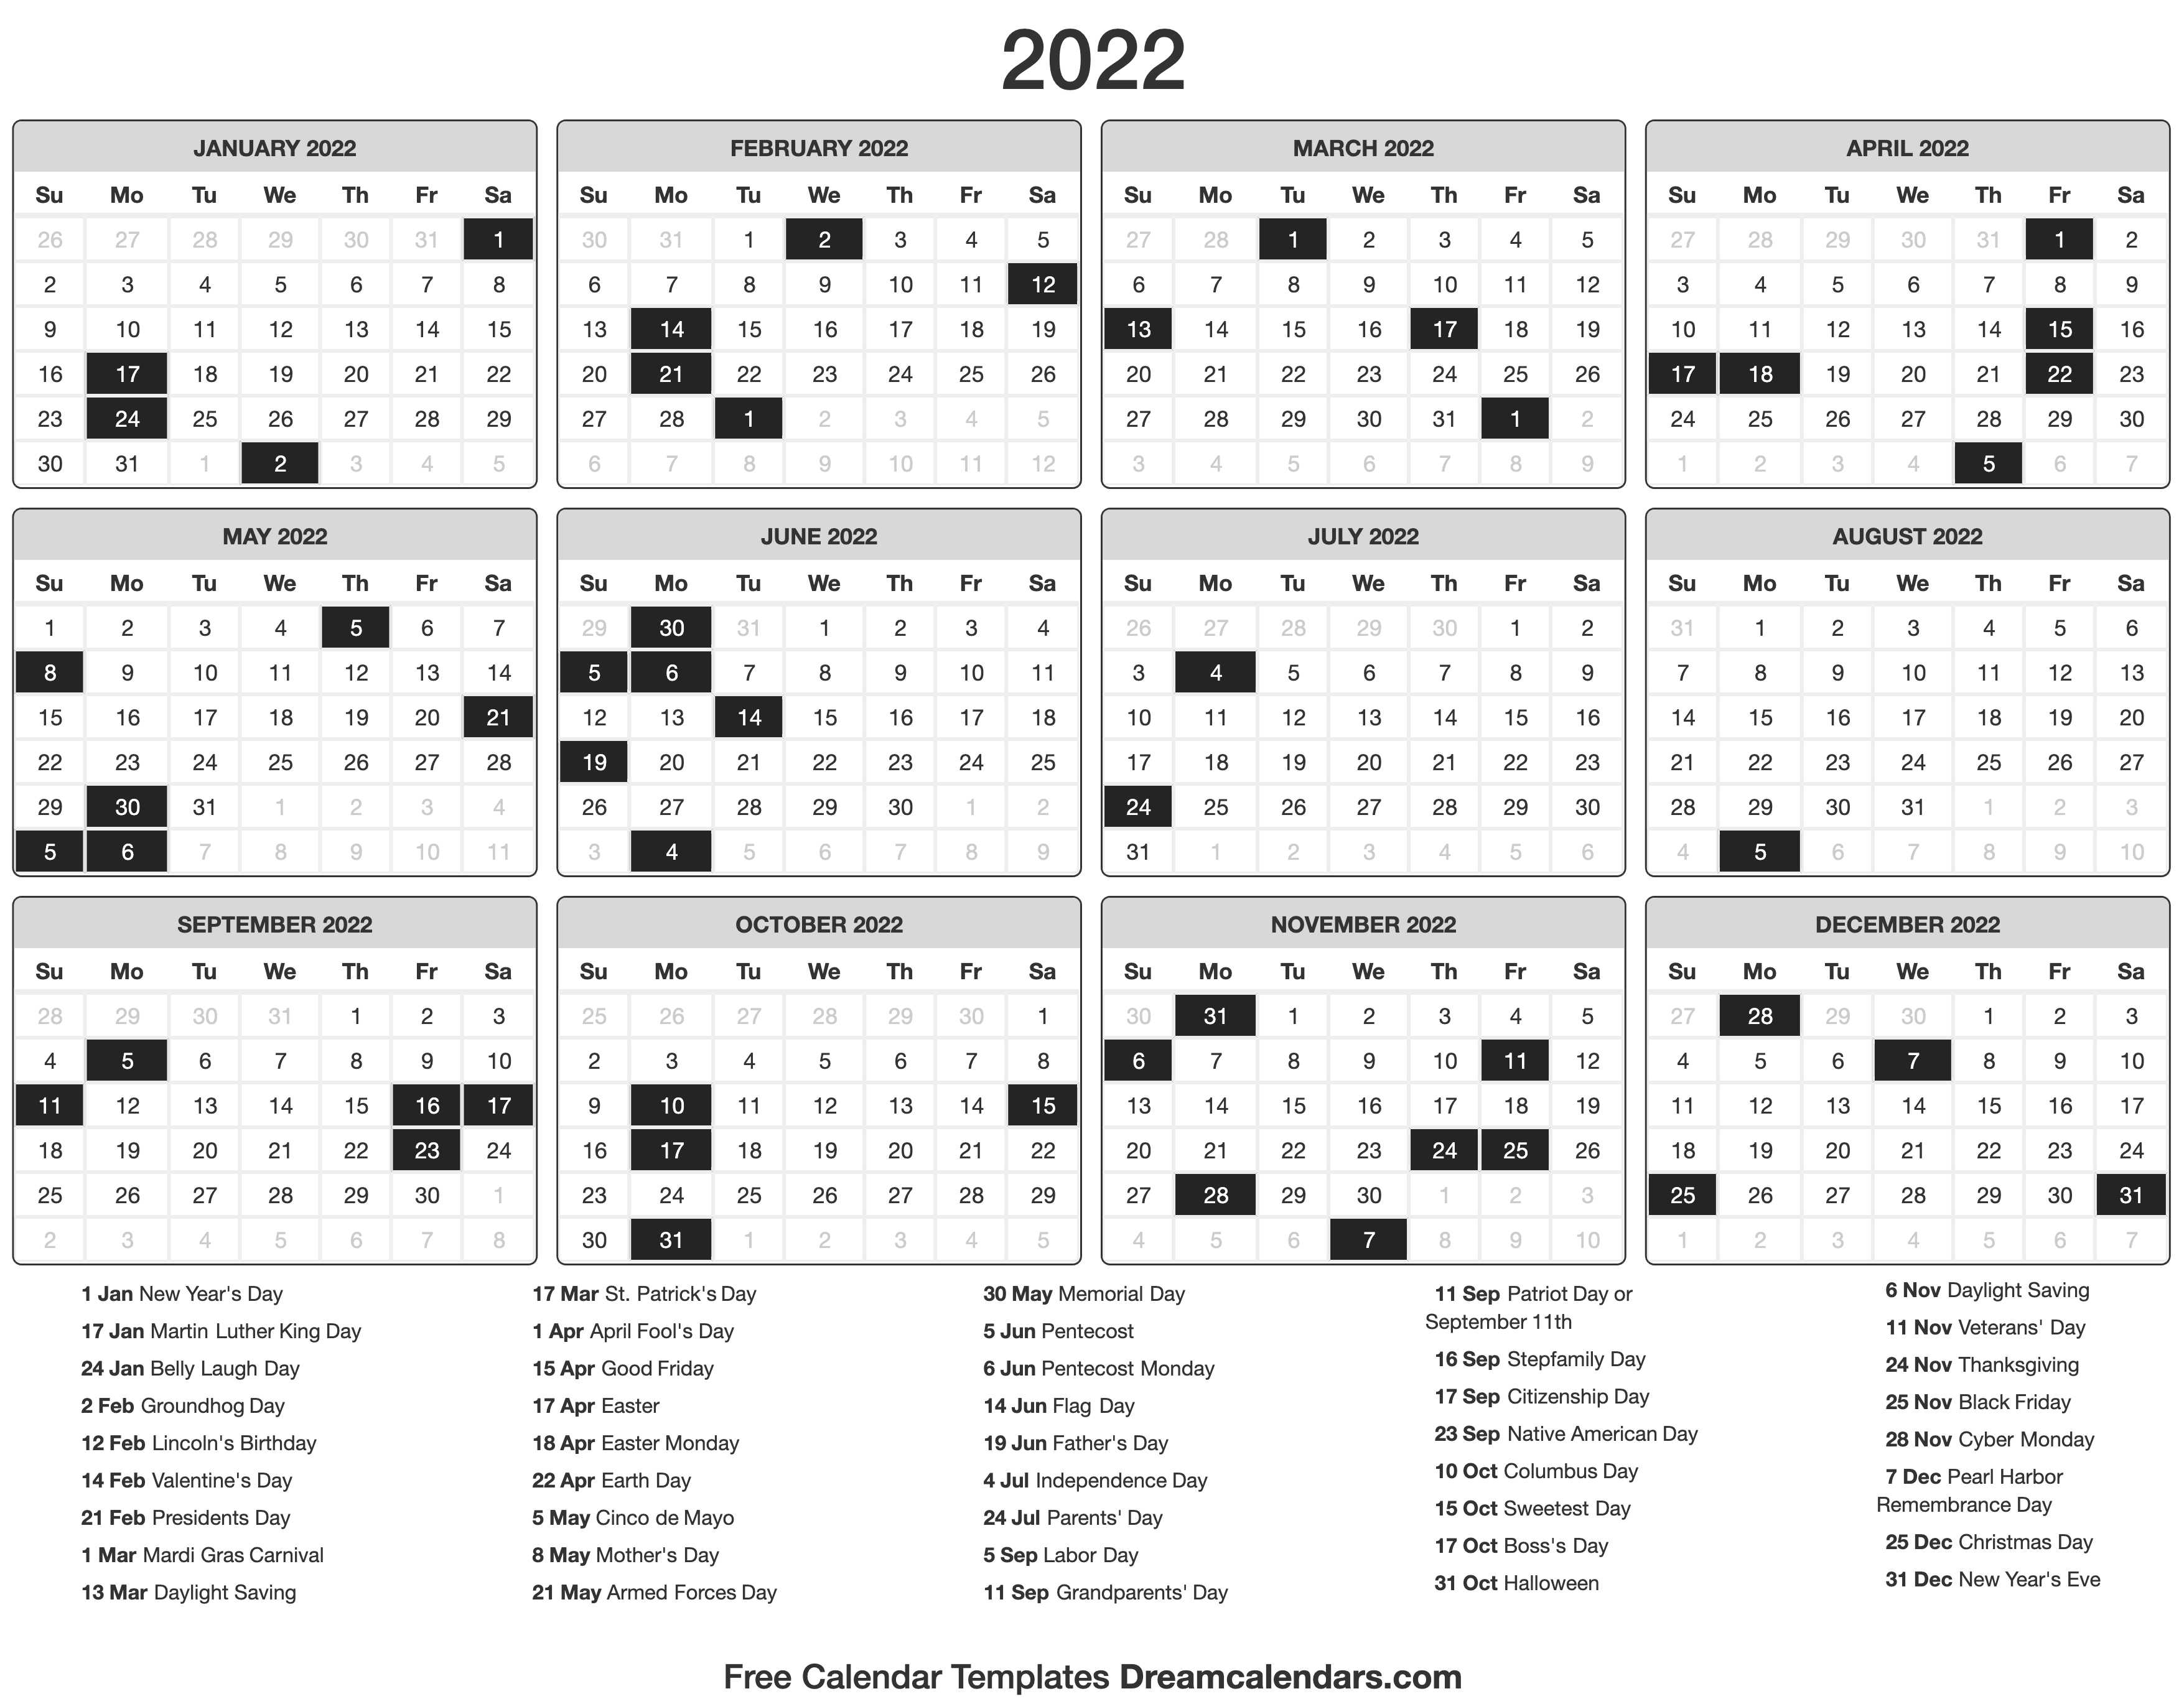 Memorial Day 2022 Calendar 2022 Calendar